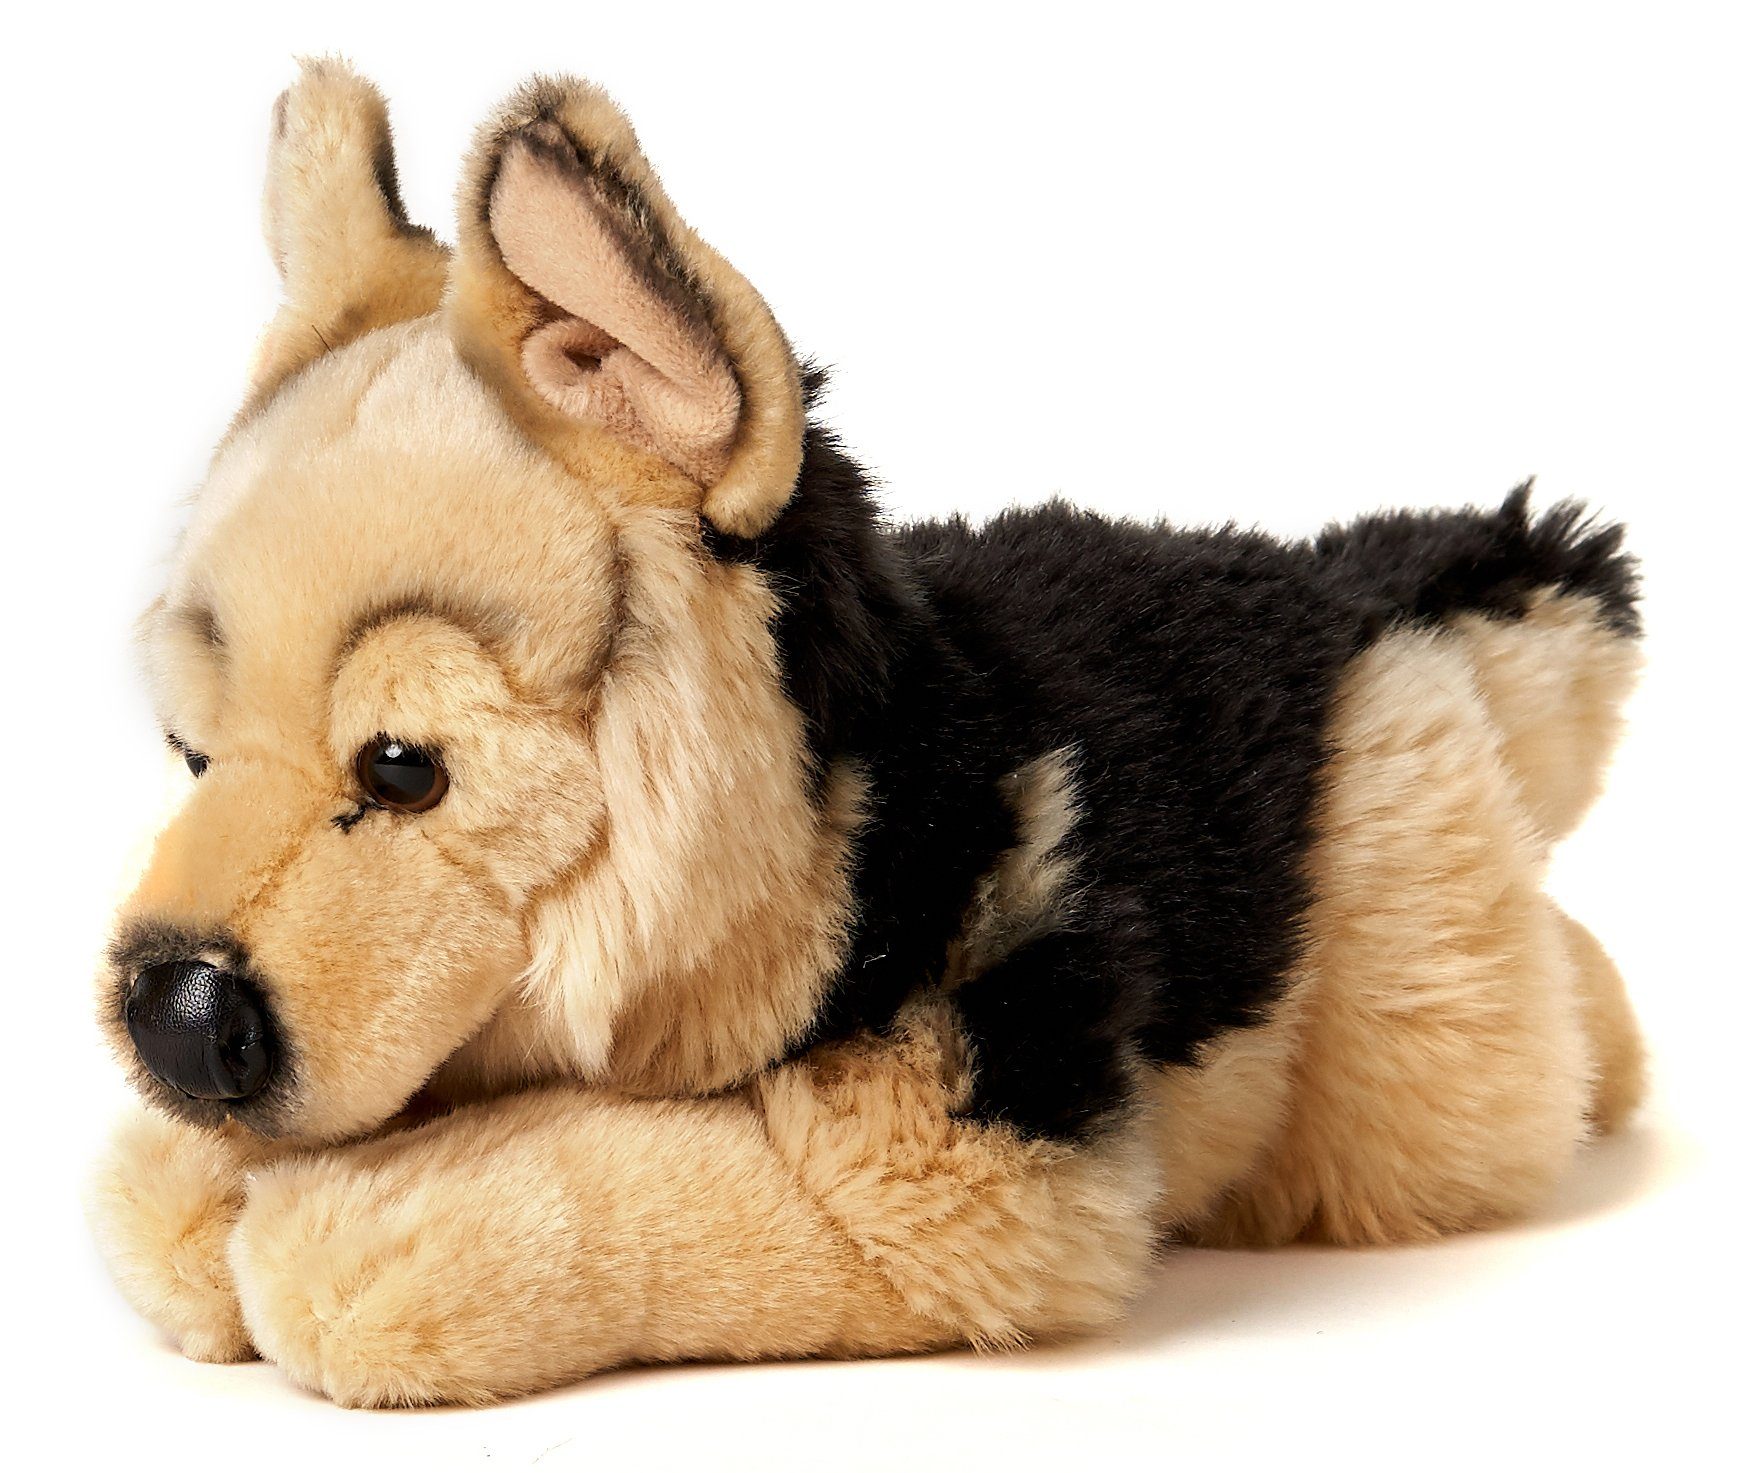 Uni-Toys Kuscheltier Deutscher Schäferhund, liegend - Länge 37 cm - Plüsch-Hund, Plüschtier, zu 100 % recyceltes Füllmaterial